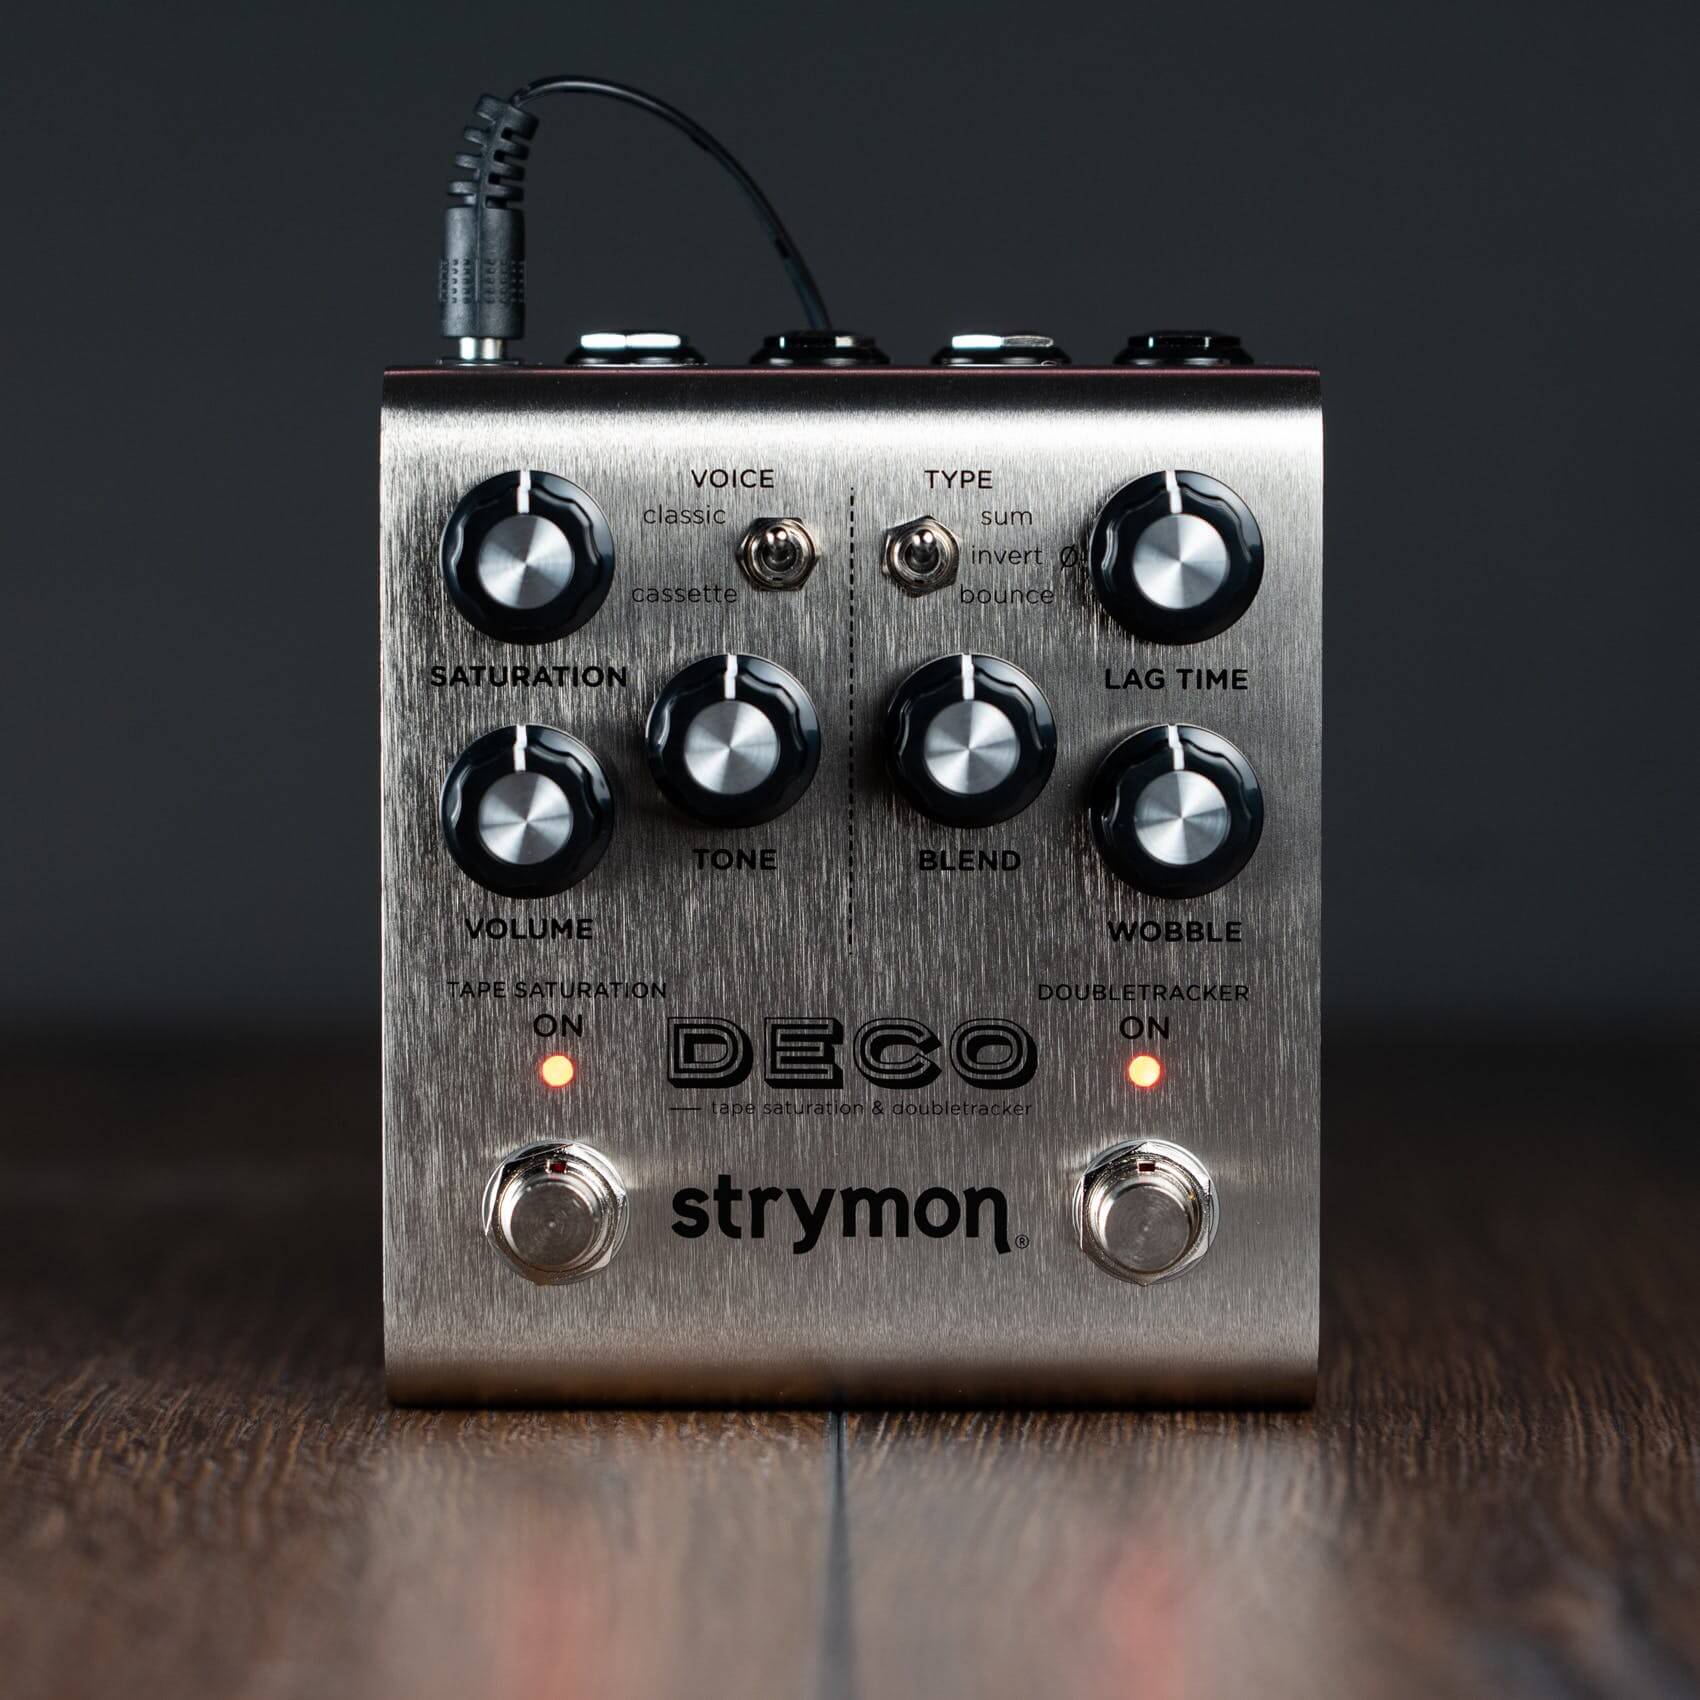 Strymon Deco MIDI-fication Open Source Project